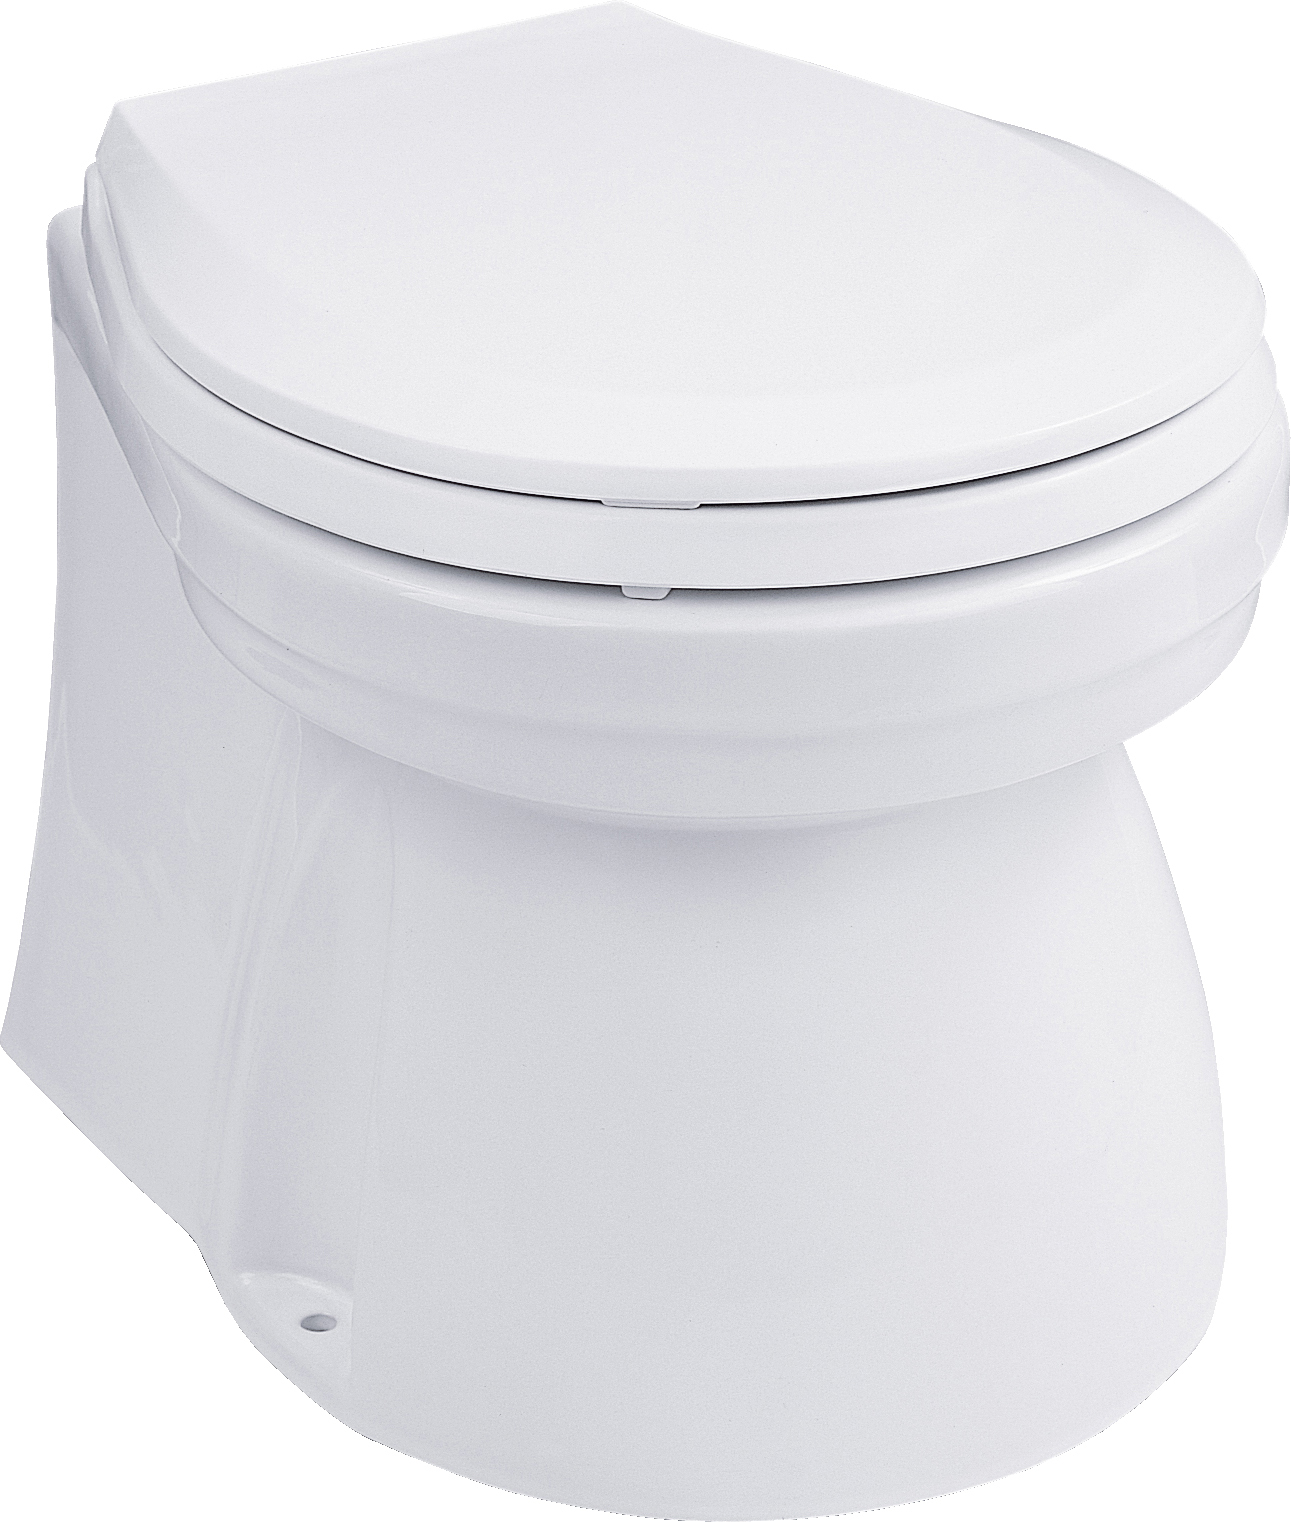 TMC Elektrisk toalett Lux 24V medium bolle lav